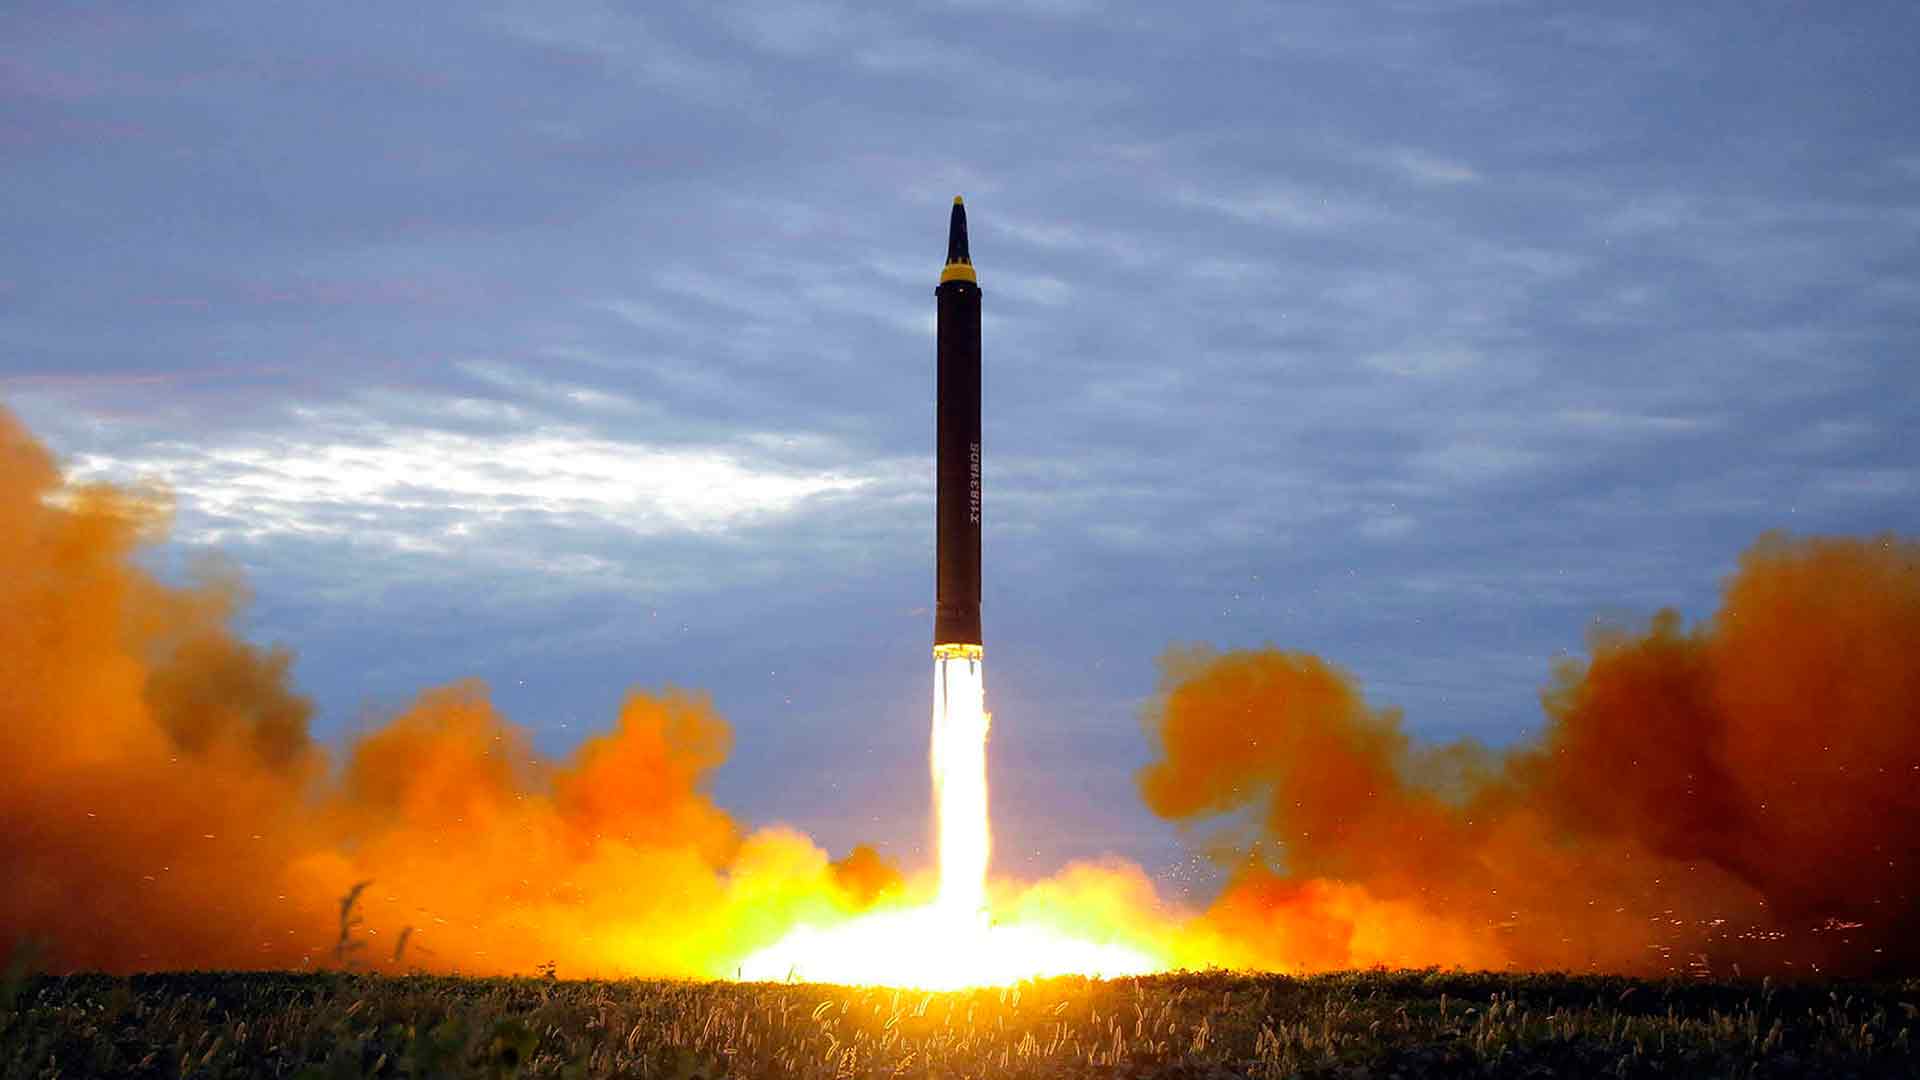 Imágenes de satélite muestran que el desmantelamiento nuclear de Corea del Norte ya está en marcha